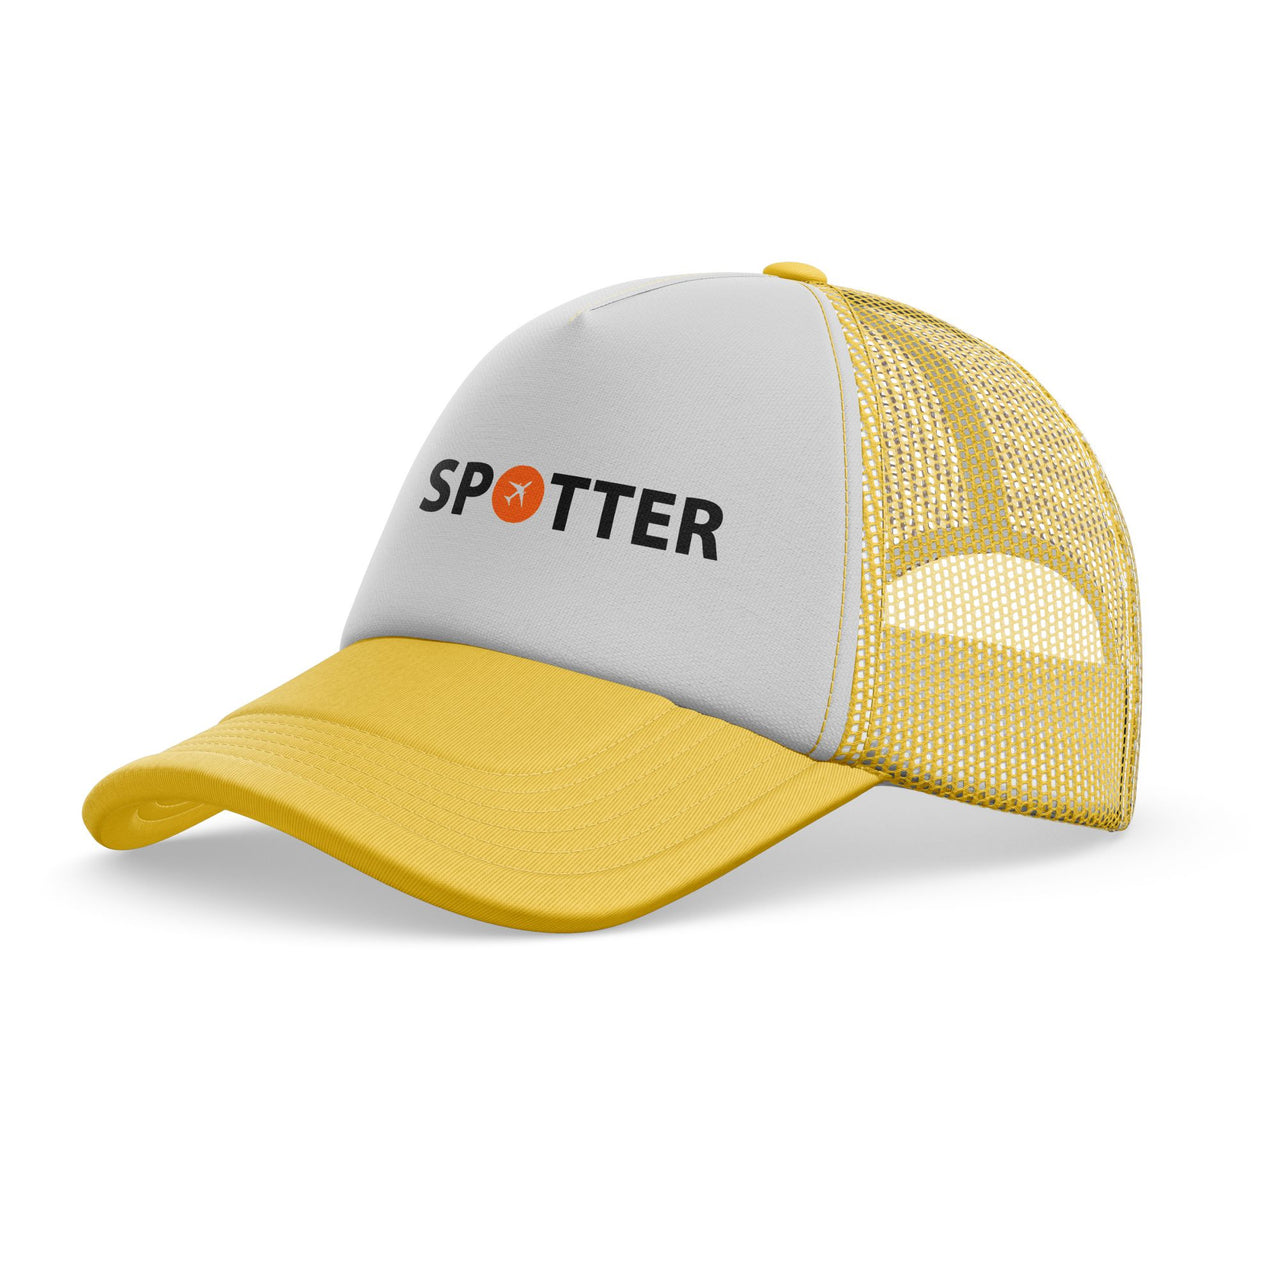 Spotter Designed Trucker Caps & Hats